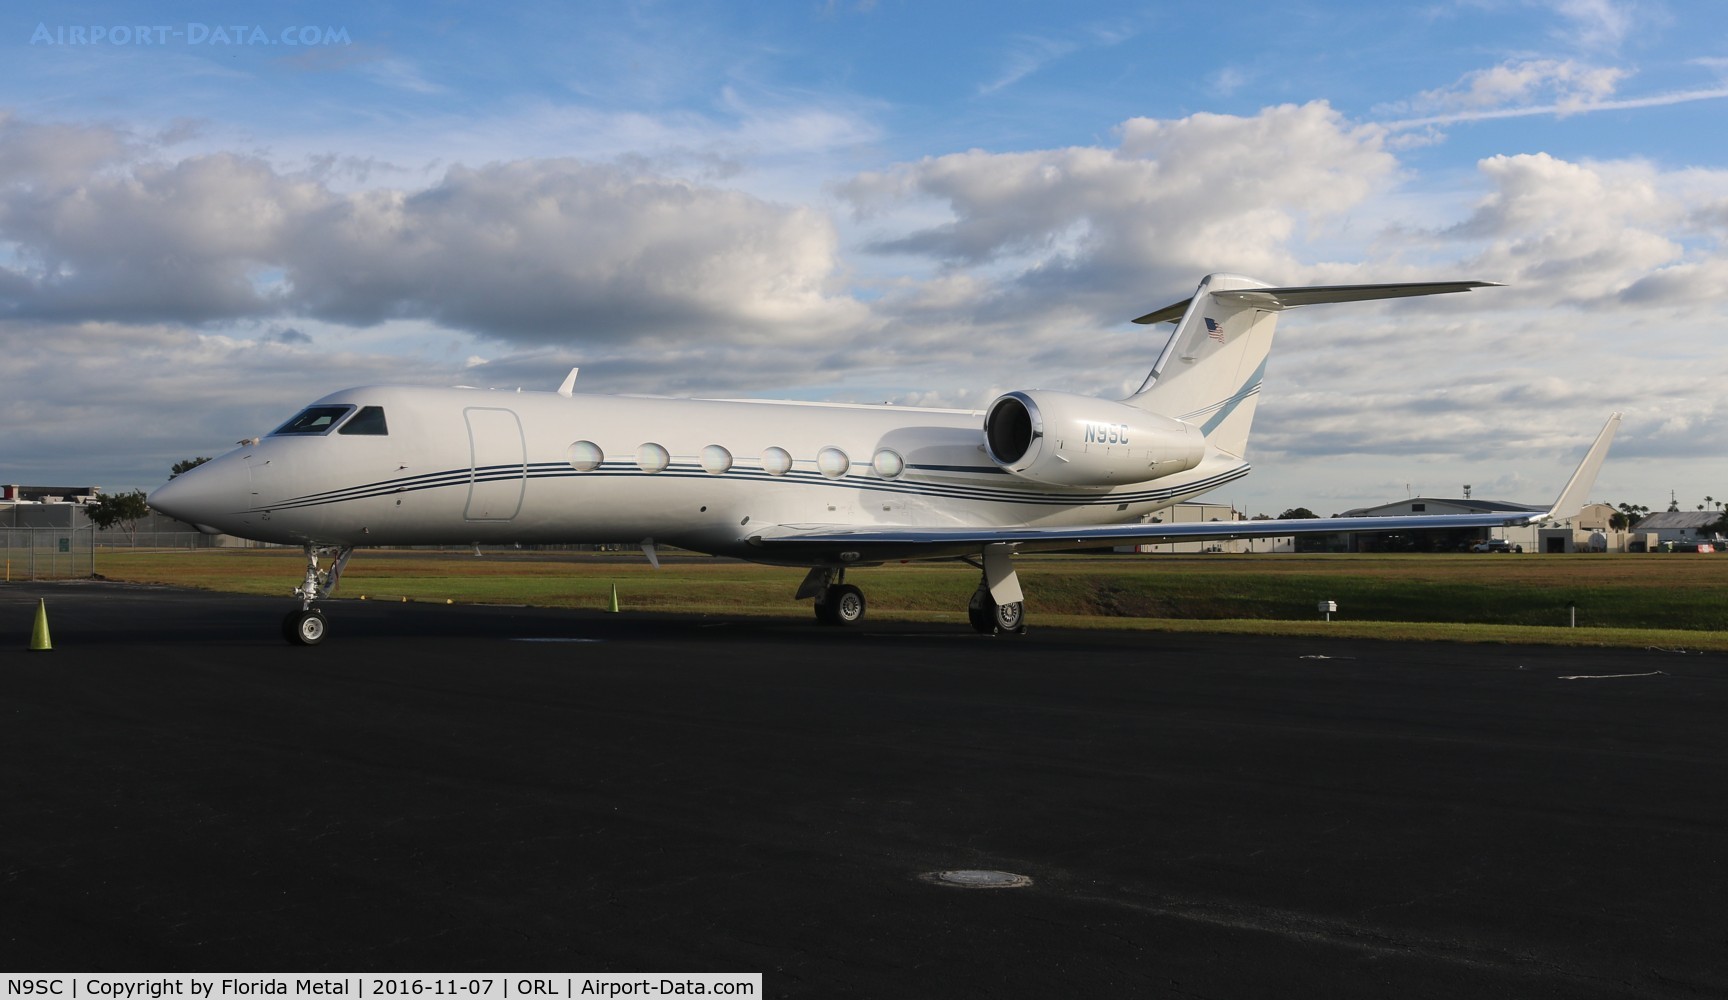 N9SC, 2009 Gulfstream Aerospace GIV-X (G450) C/N 4174, Gulfstream IV